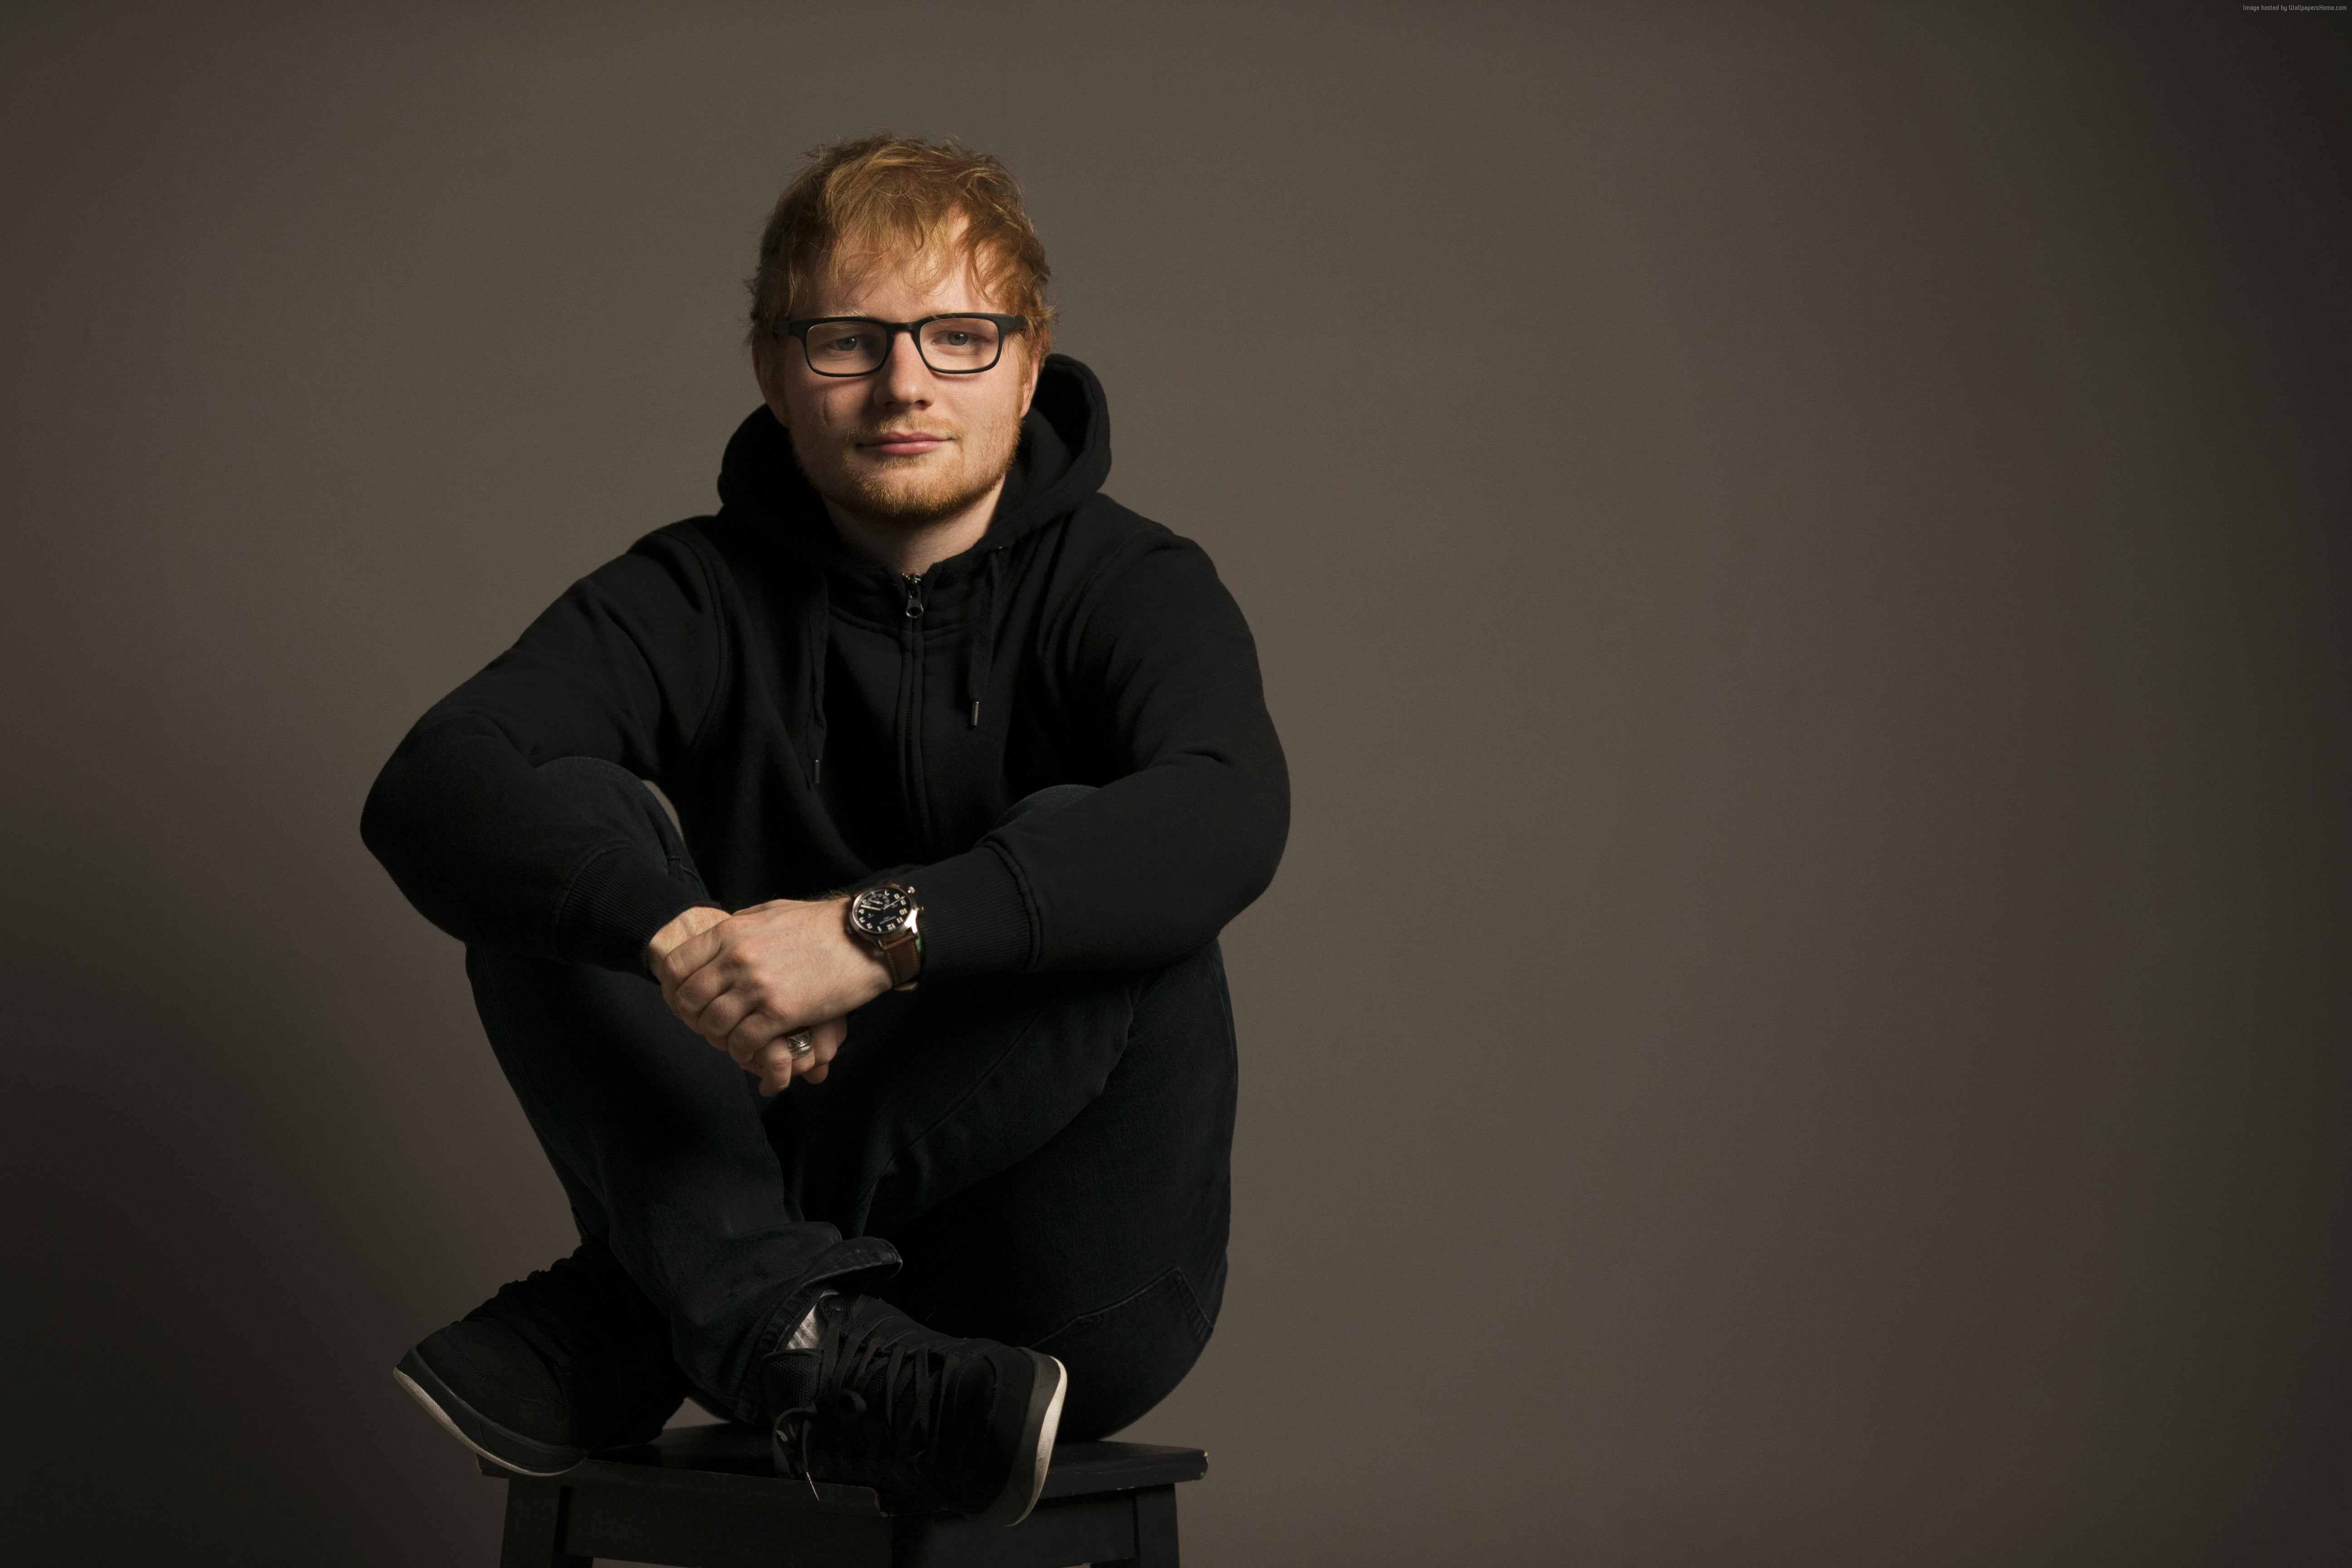 Ed Sheeran Hd 2017 , HD Wallpaper & Backgrounds